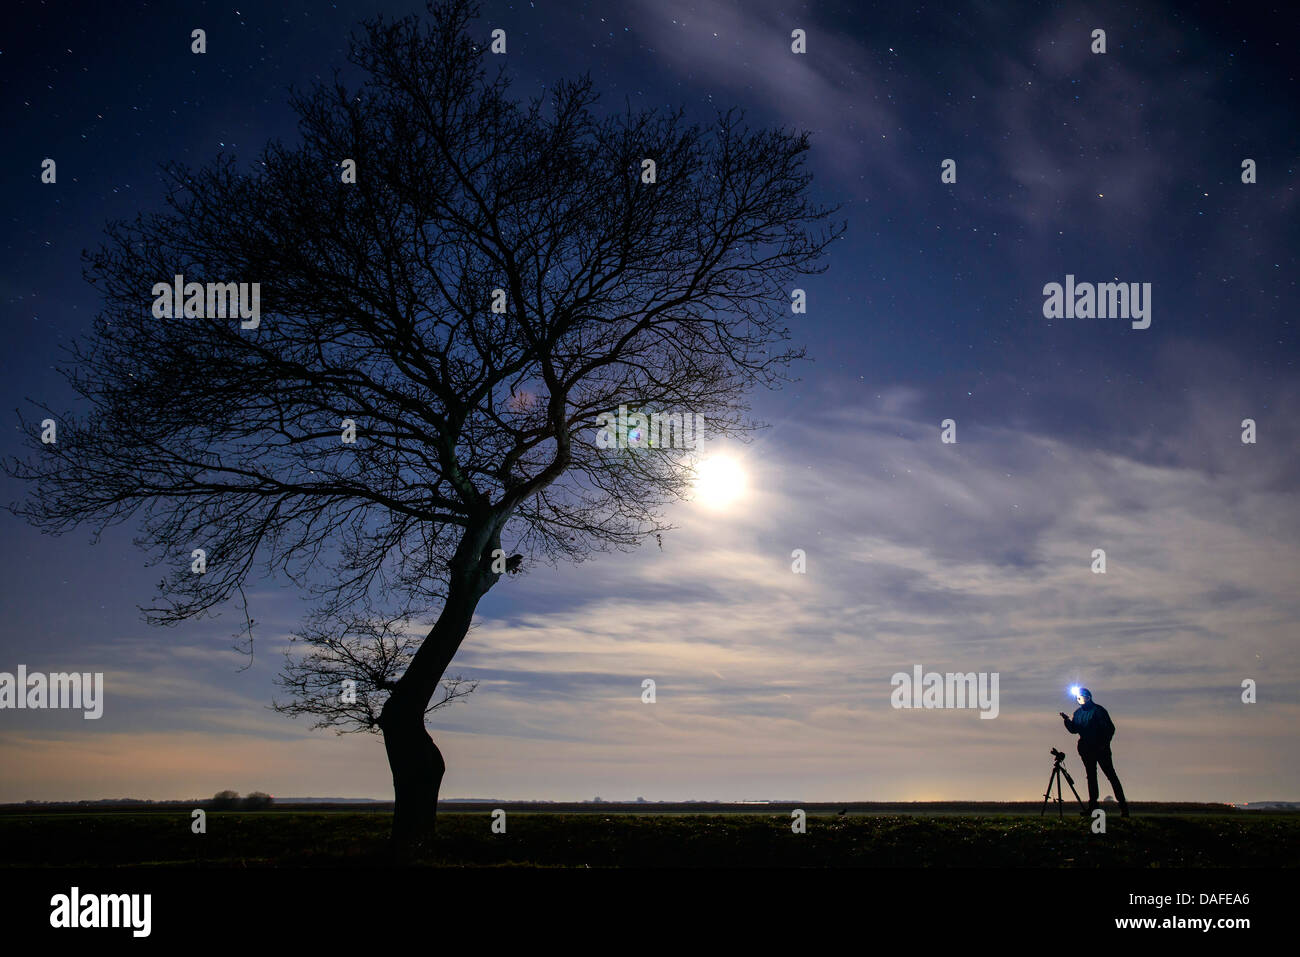 Struttura ad albero singolo e fotografo al chiaro di luna Foto Stock